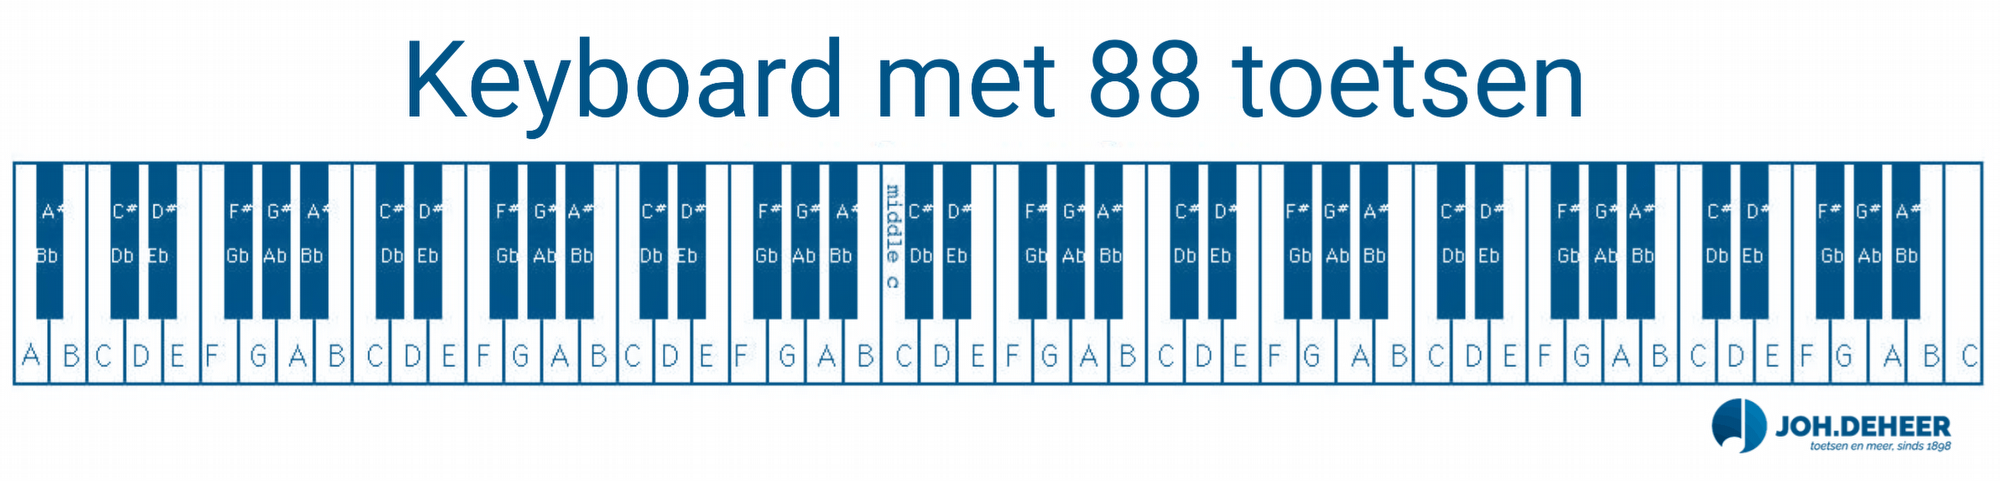 Hoeveel toetsen heeft een keyboard? - keyboardtoetsen-min